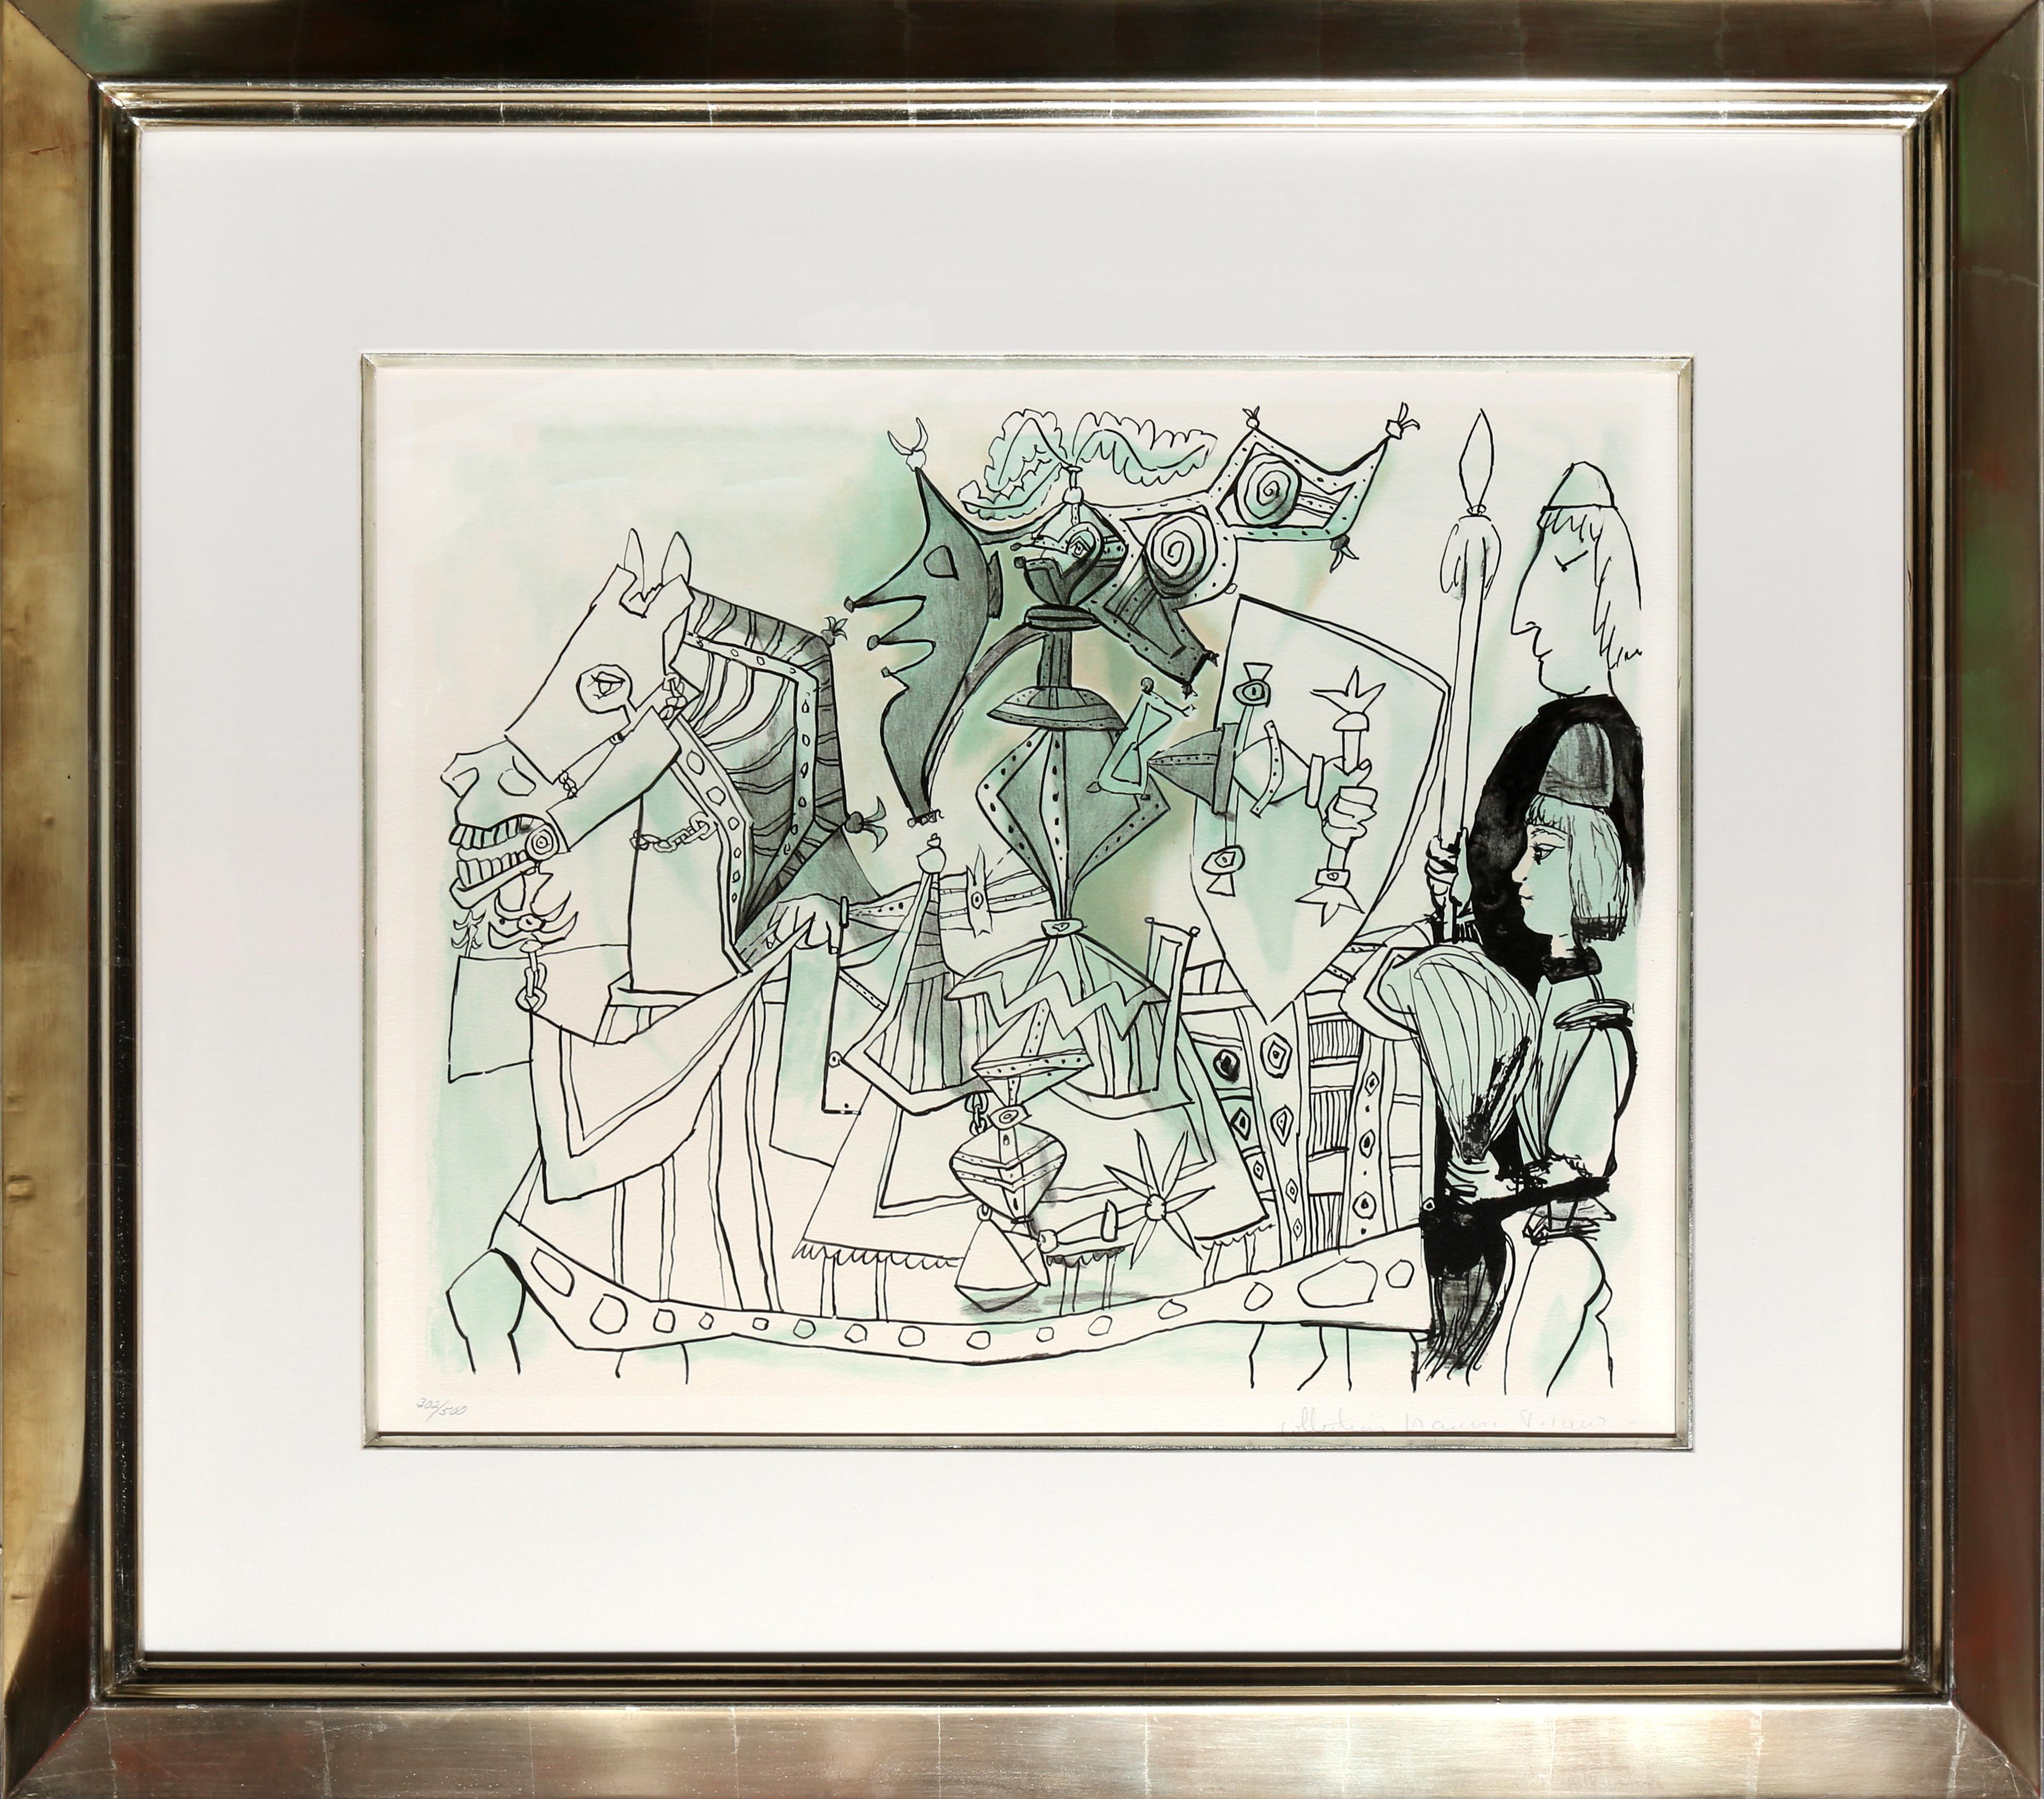 Une lithographie provenant de la Collection SALE de Marina Picasso d'après le tableau de Pablo Picasso "Jeux de Pages".  La peinture originale a été achevée en 1951. Dans les années 1970, après la mort de Picasso, Marina Picasso, sa petite-fille, a